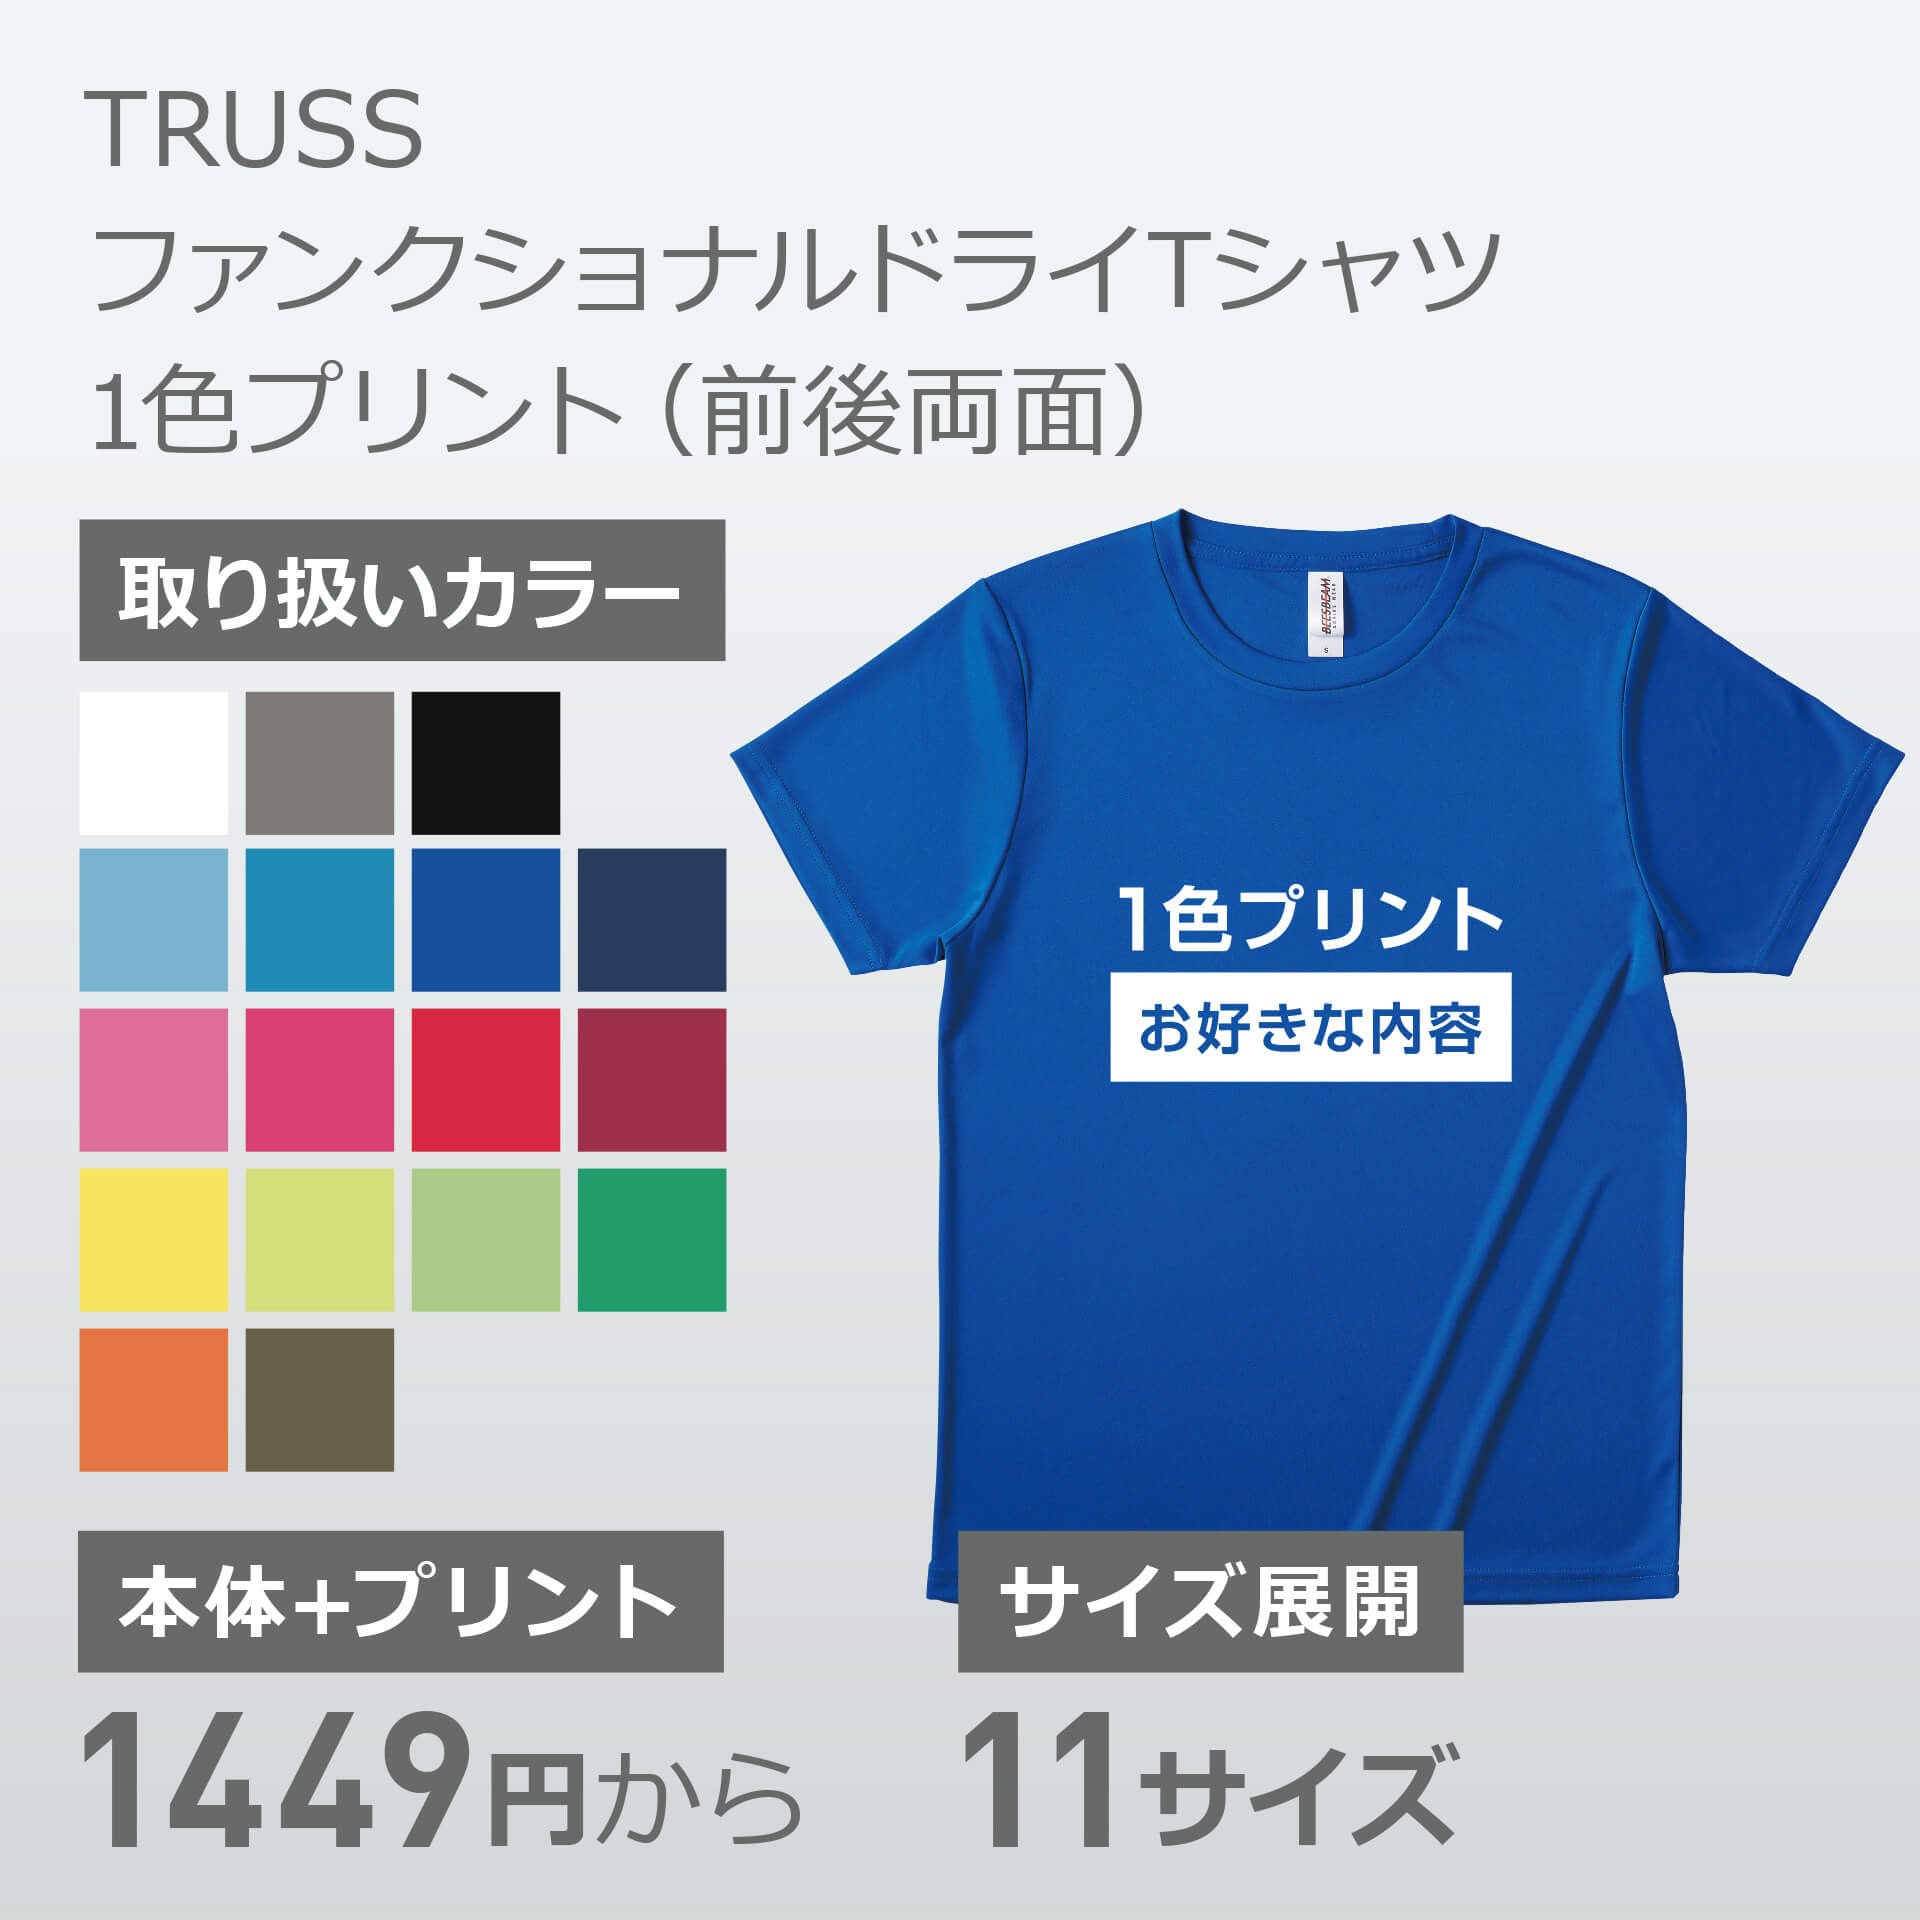 TRUSS ファンクショナルドライTシャツ 1色プリント(前後両面)